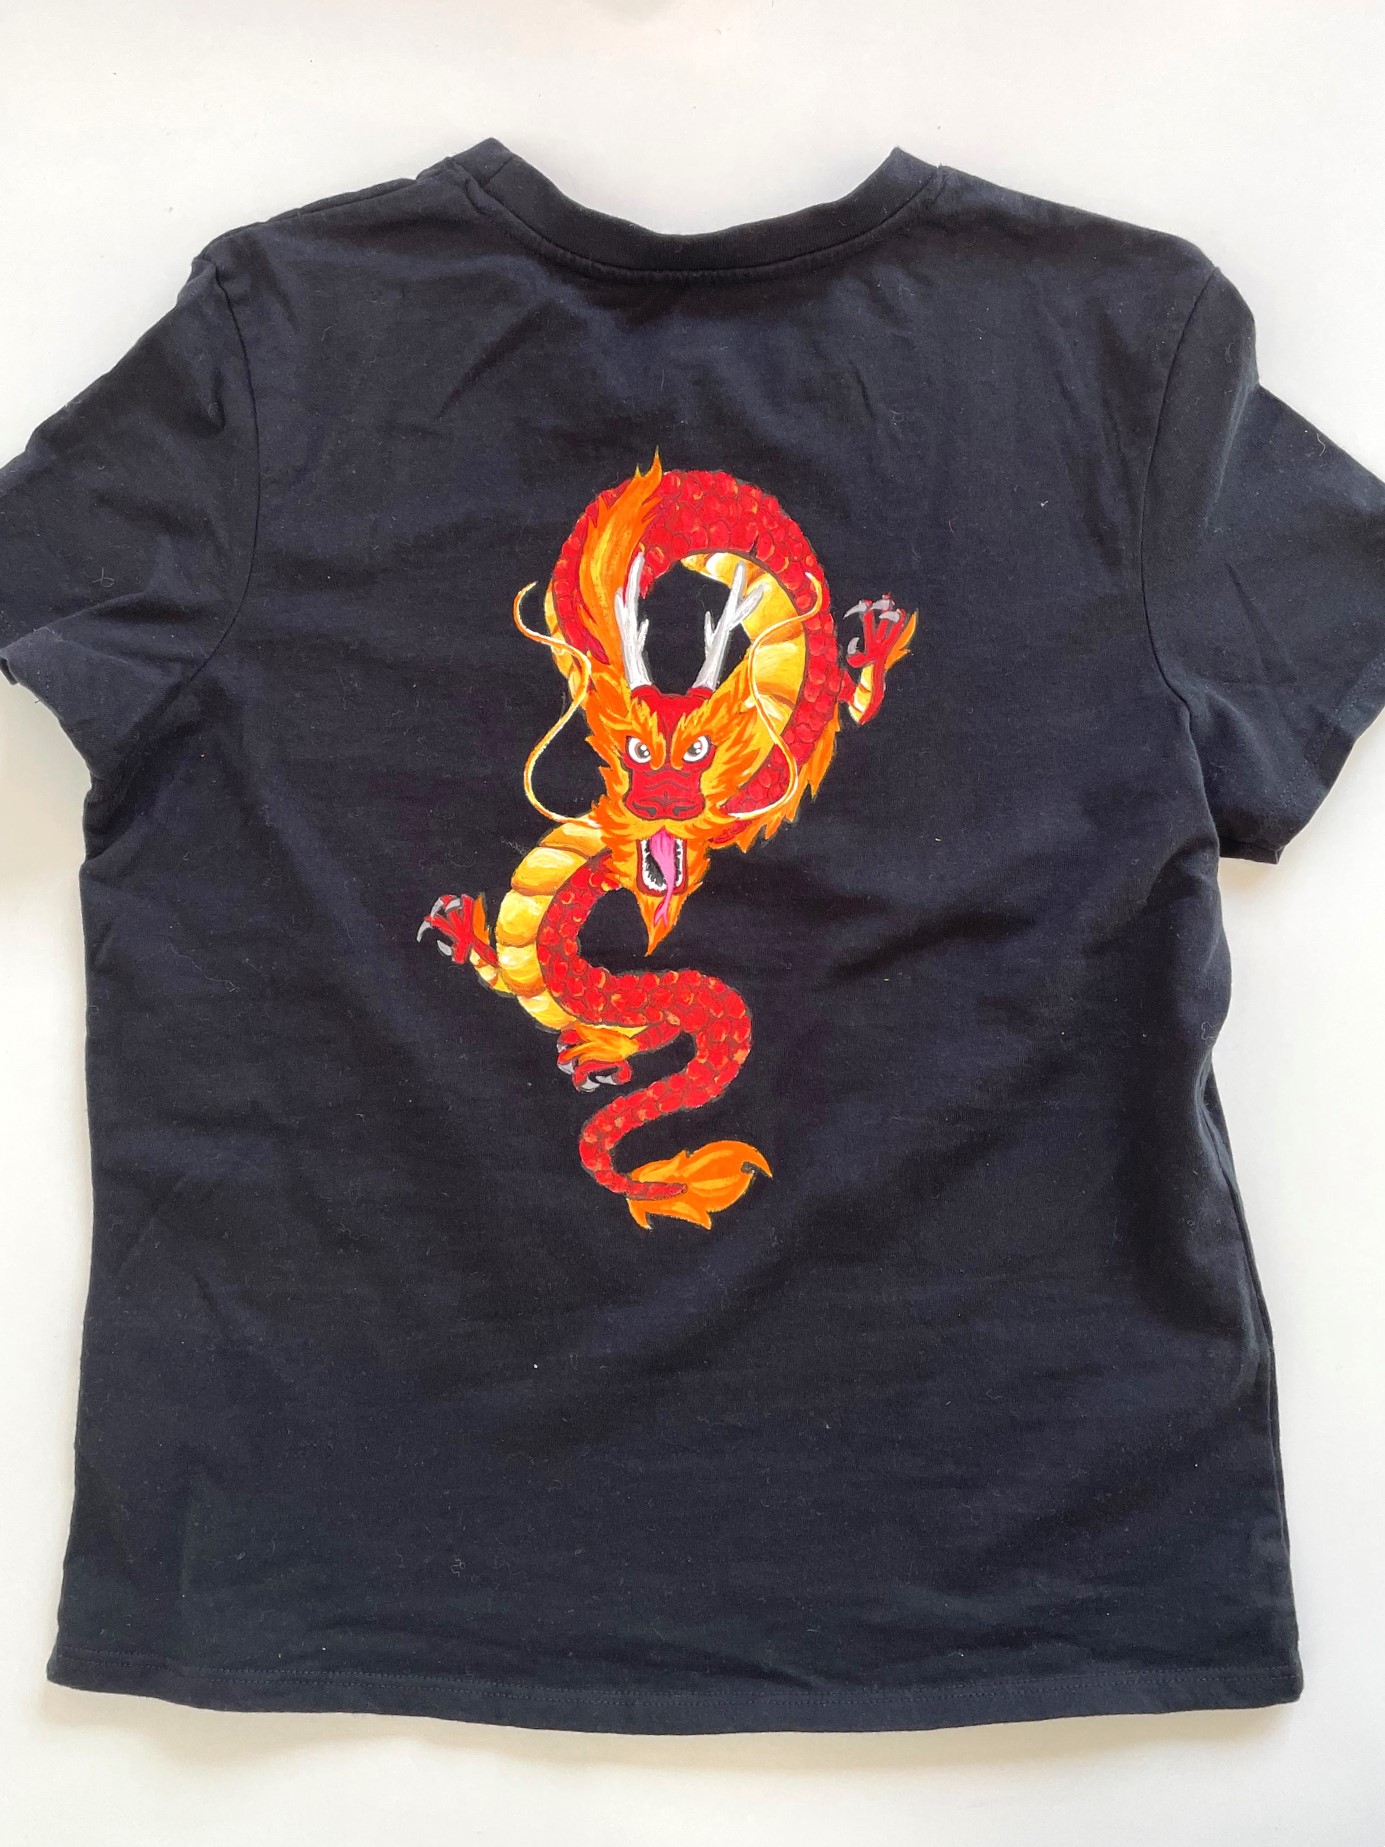 Tee-shirt noir 1214 ans avec un dragon peint à larrière sur le dos (3)